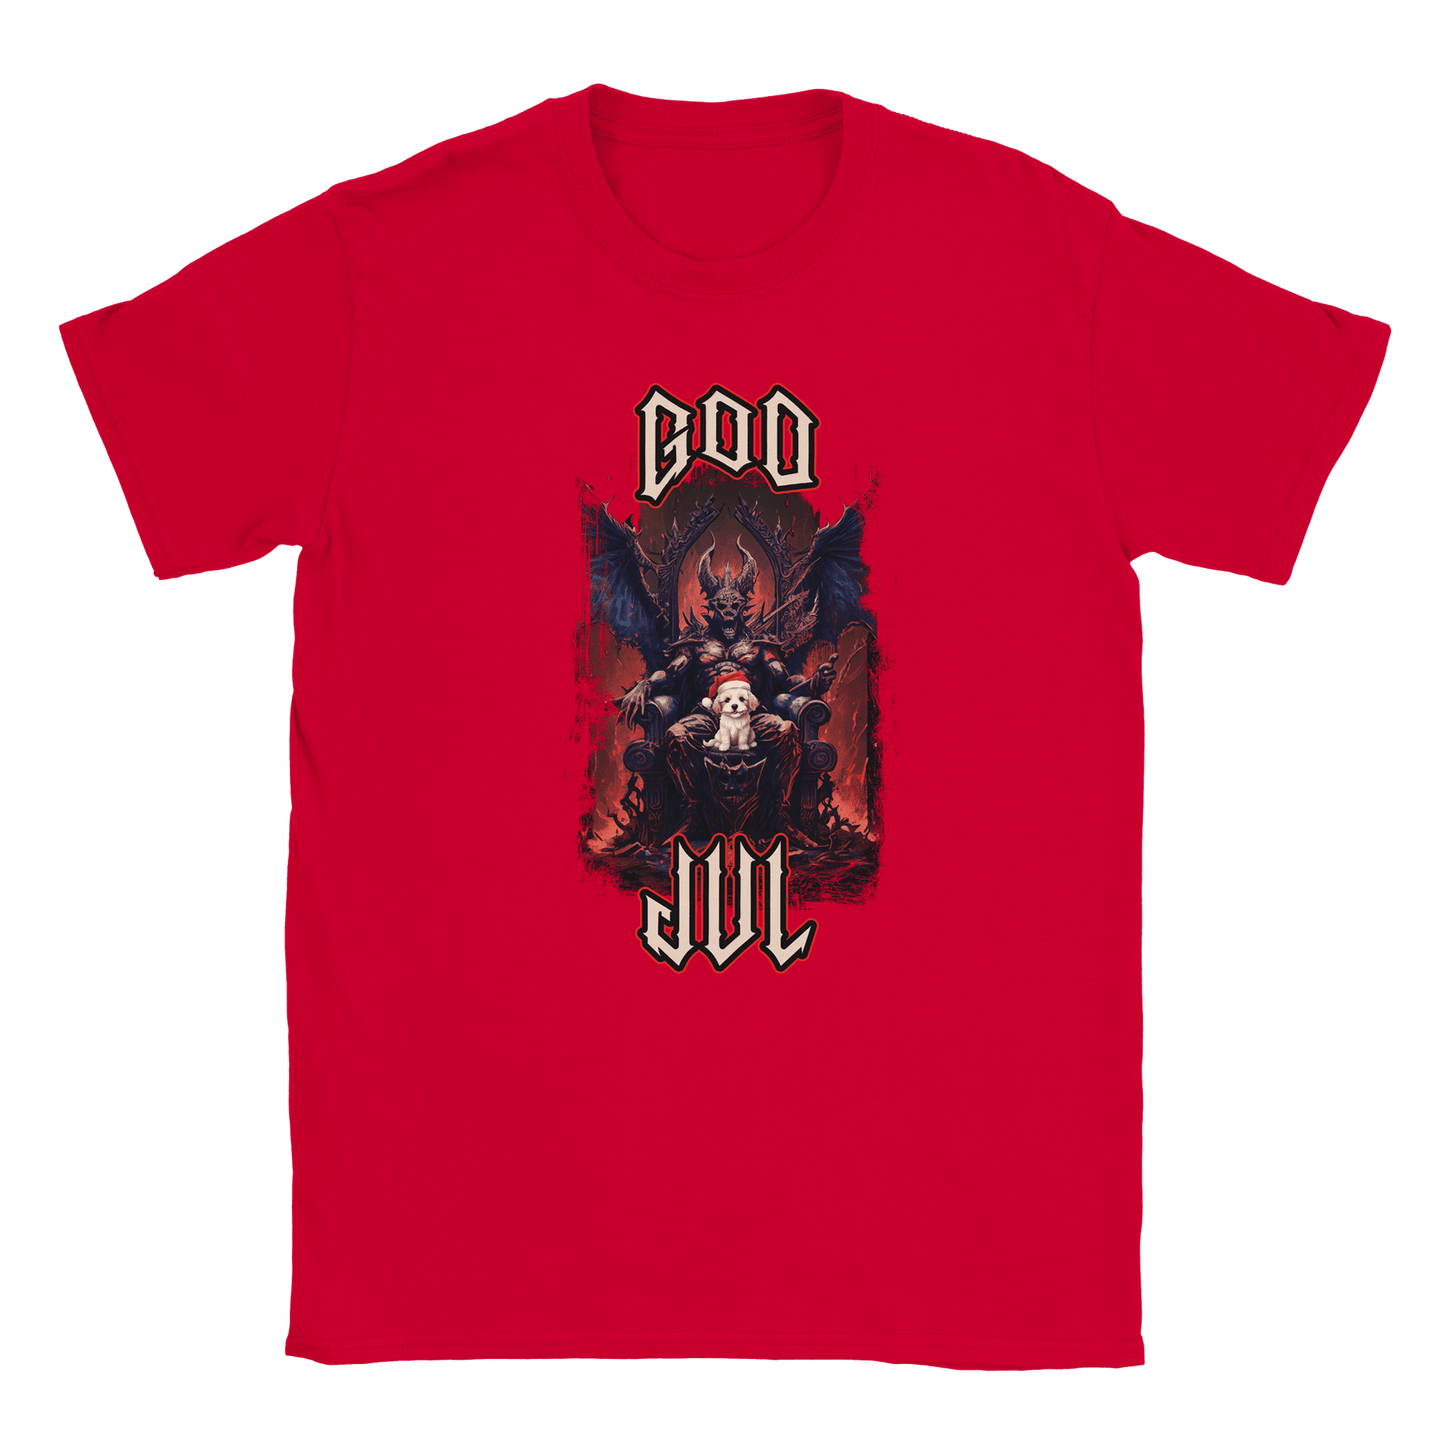 God Jul häftig hundvalp - T-shirt Röd